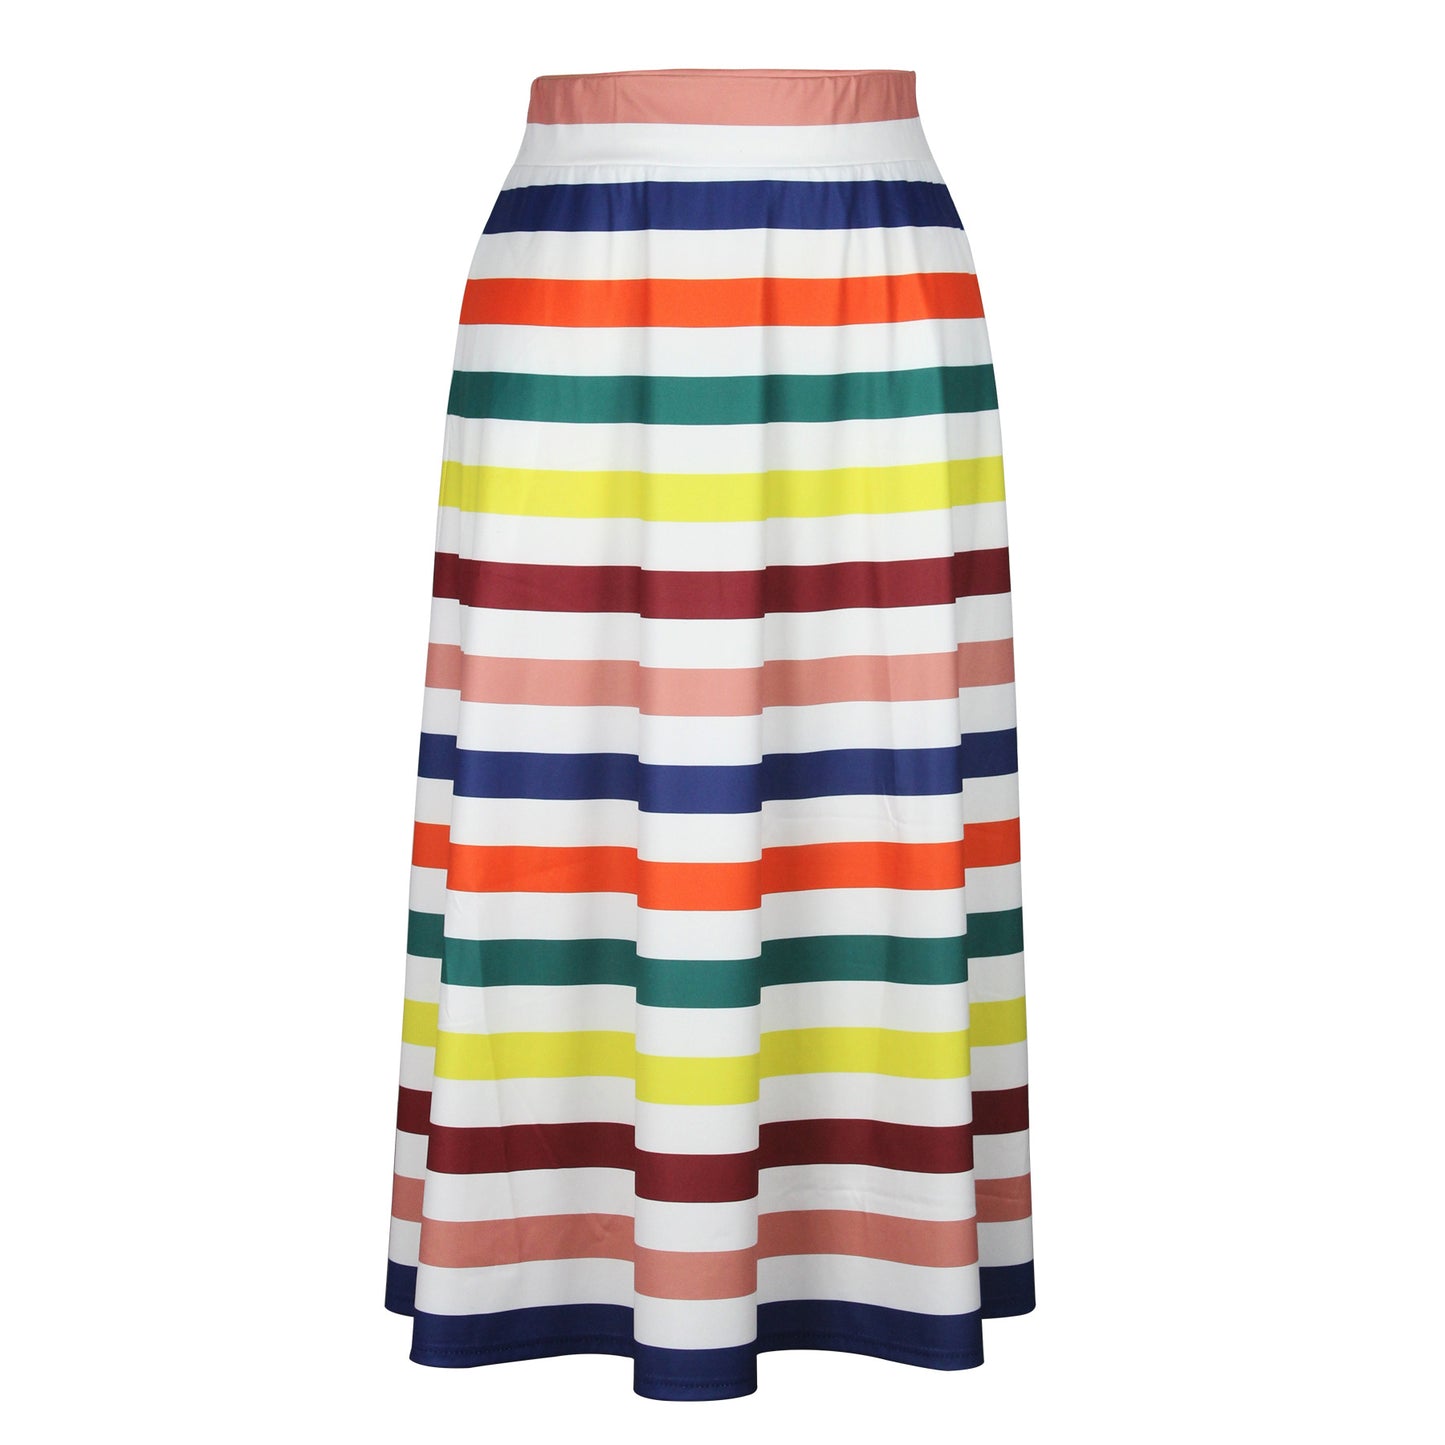 BamBam Plus Size Women's Clothing Stripe Swing Skirt - BamBam